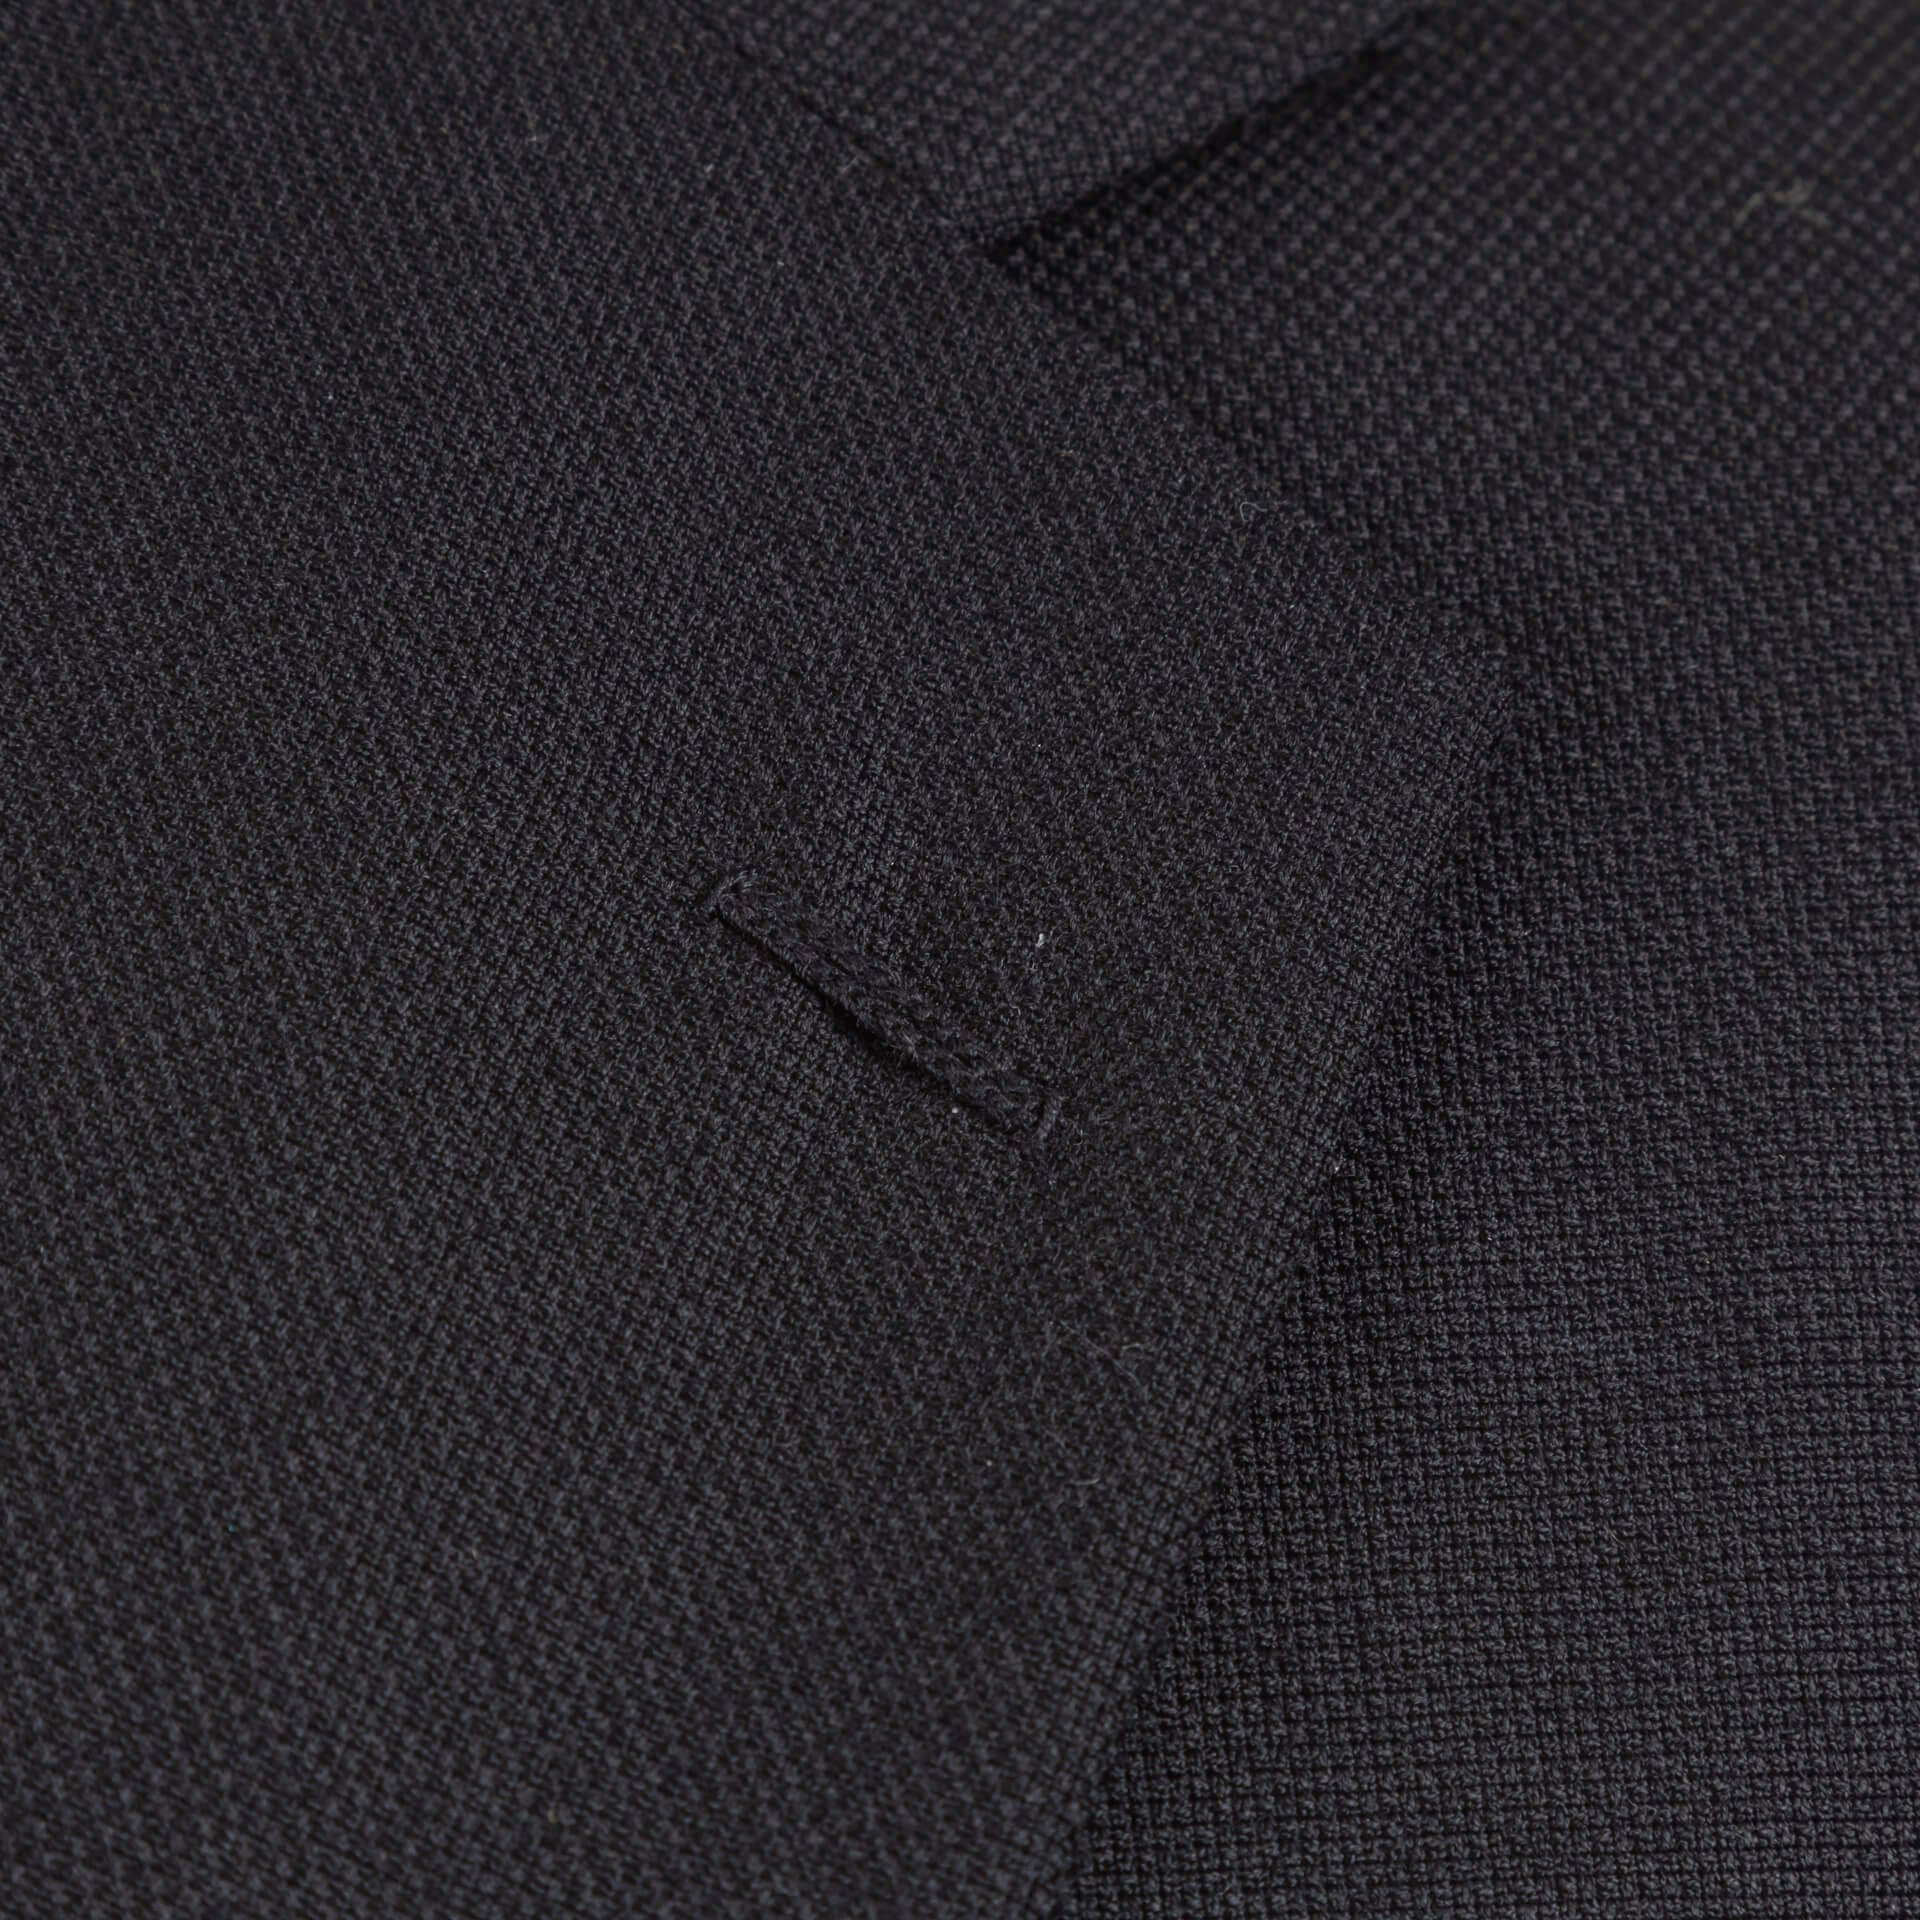 Black Sports Jacket Blazer Hopsack Diced Weave Italian Shoulder 